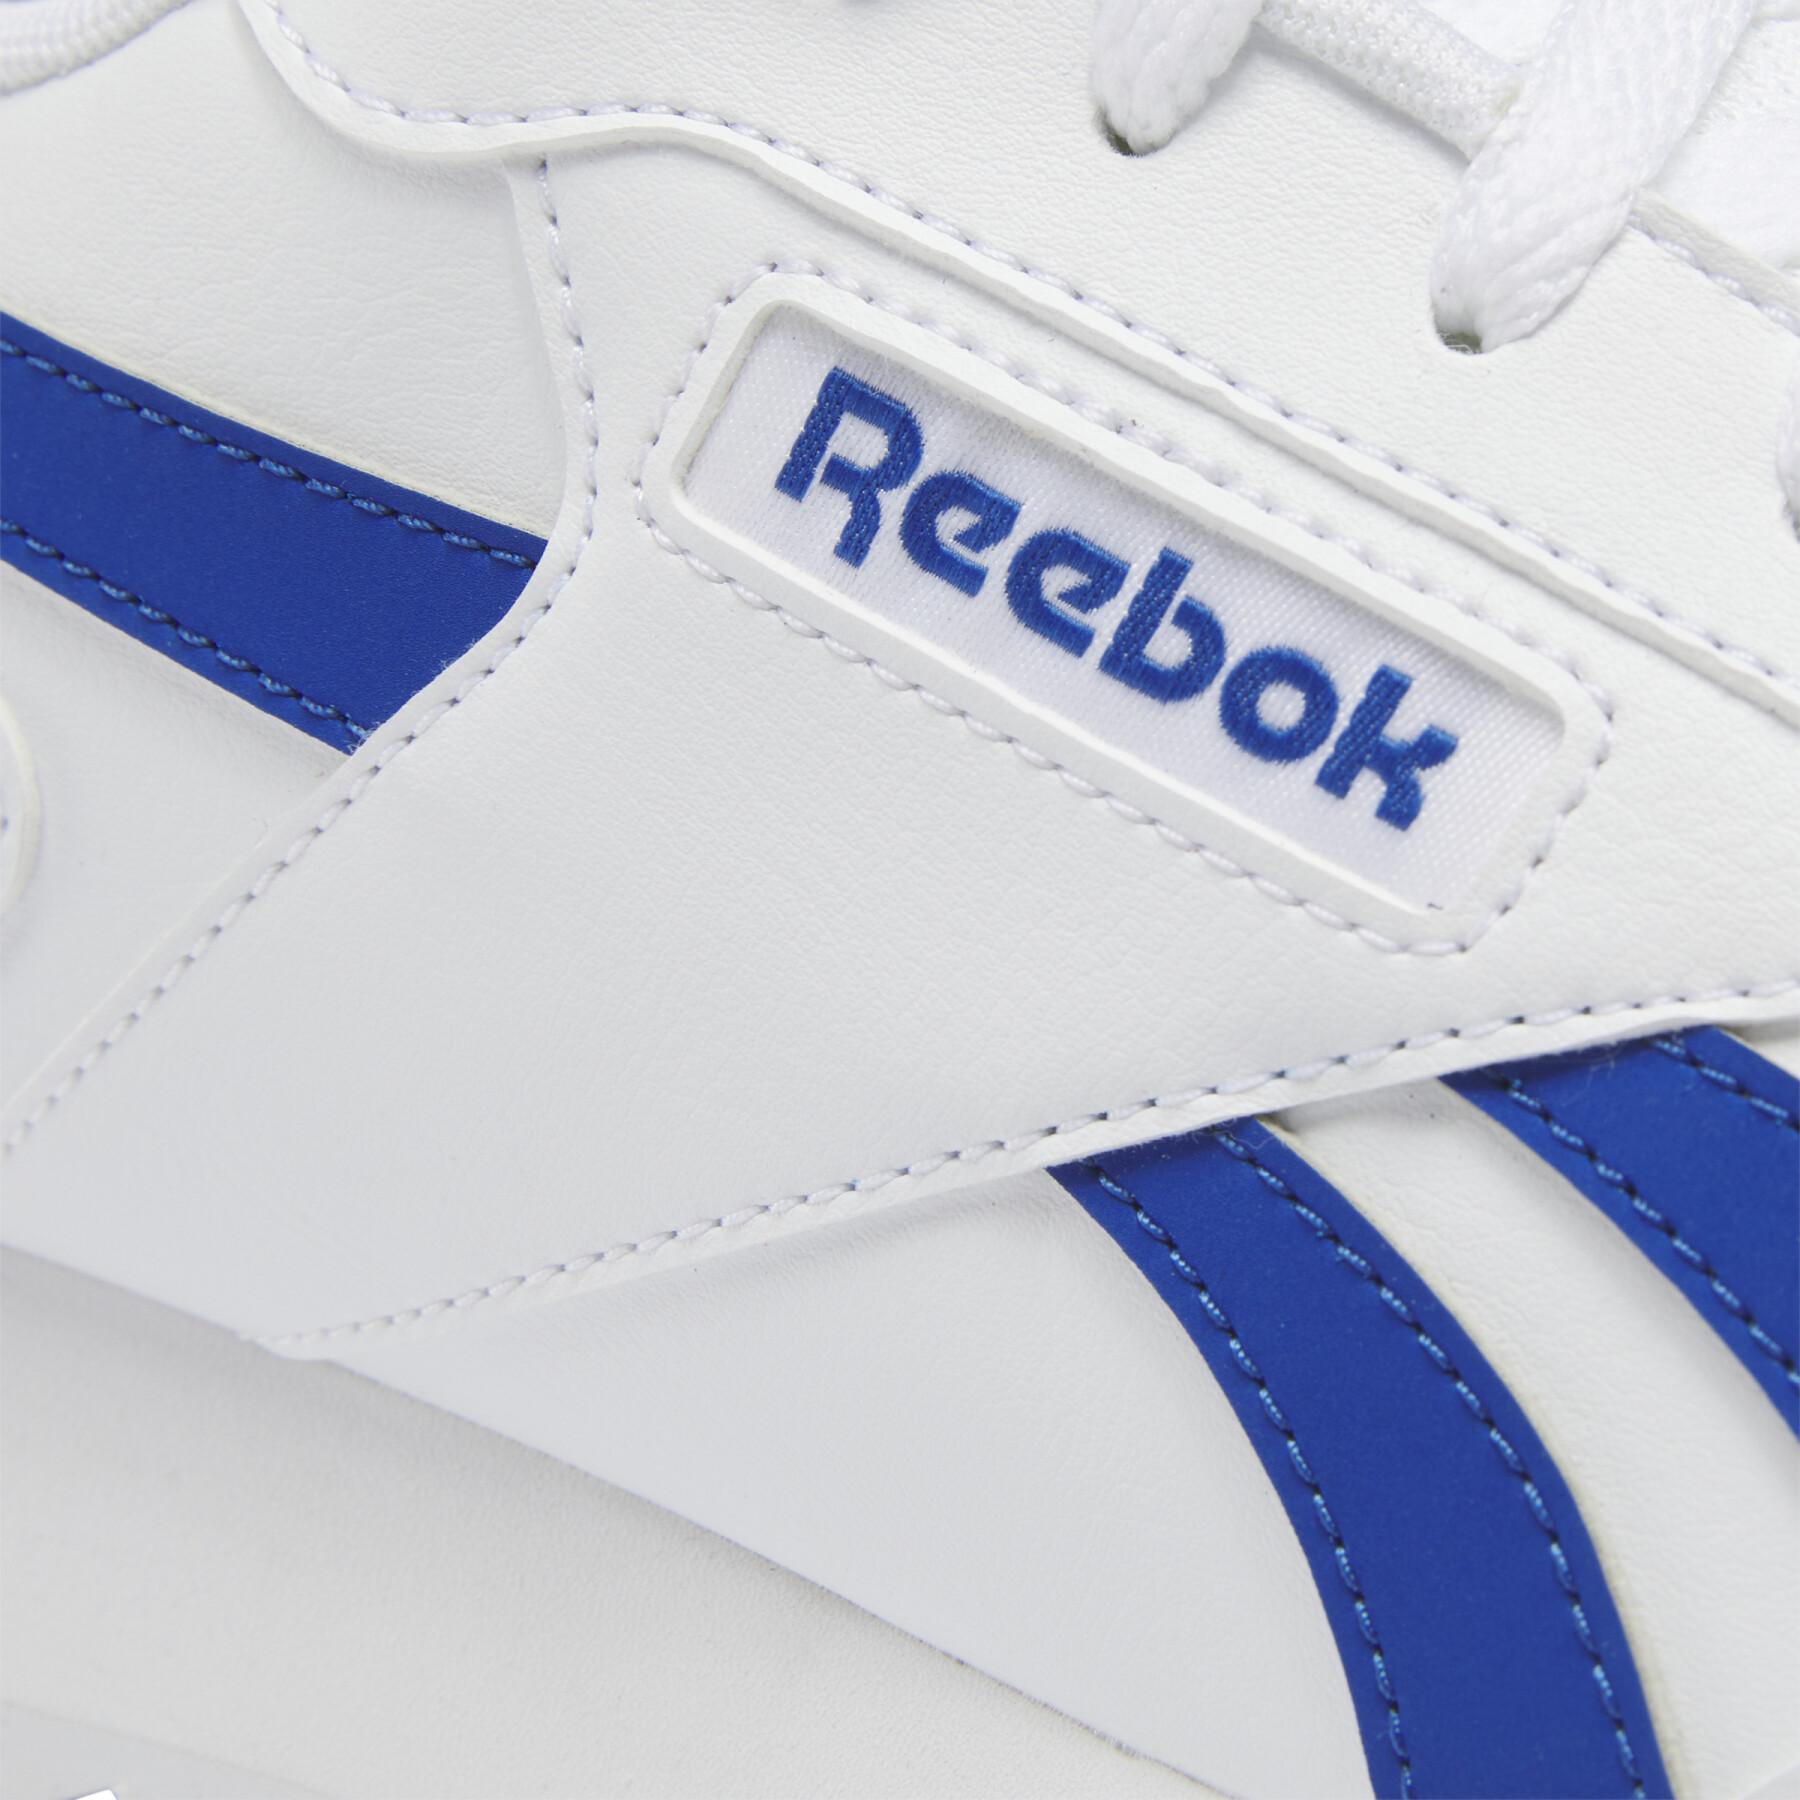 Sneakers Reebok Glide Ripple Clip